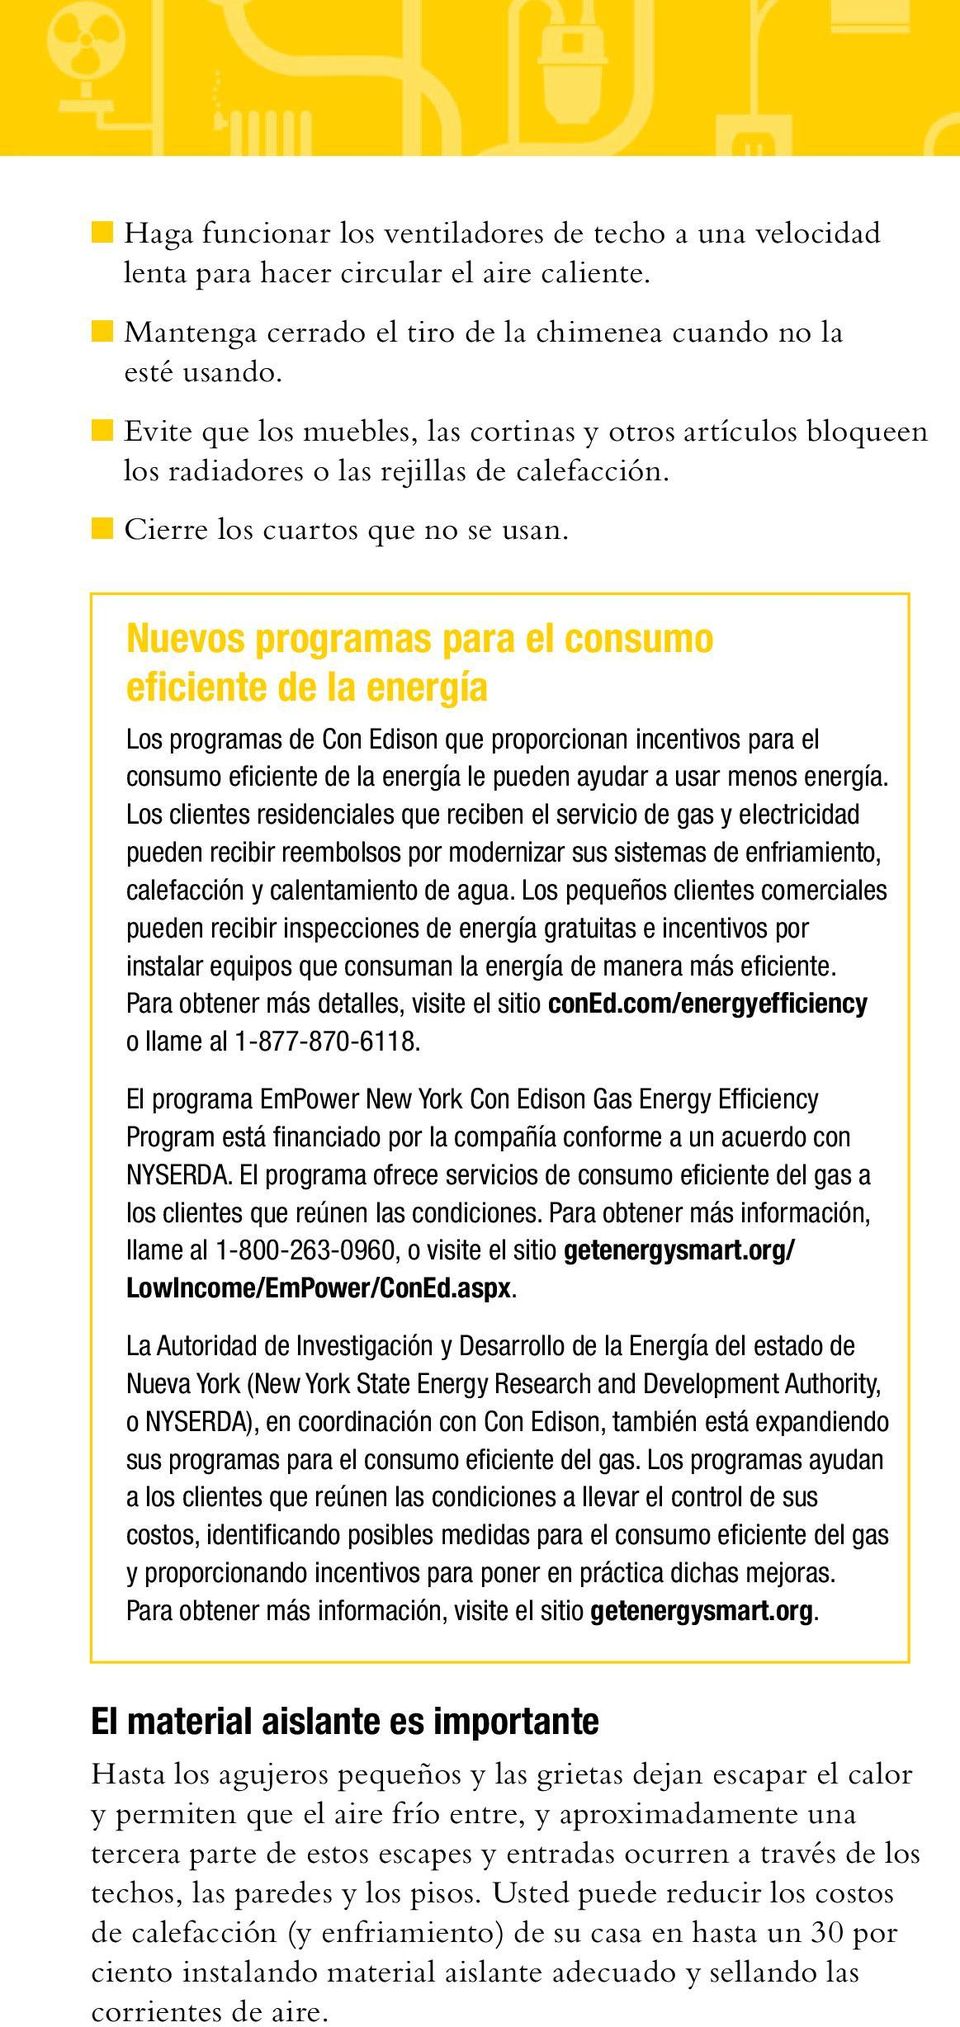 Nuevos programas para el consumo eficiente de la energía Los programas de Con Edison que proporcionan incentivos para el consumo eficiente de la energía le pueden ayudar a usar menos energía.